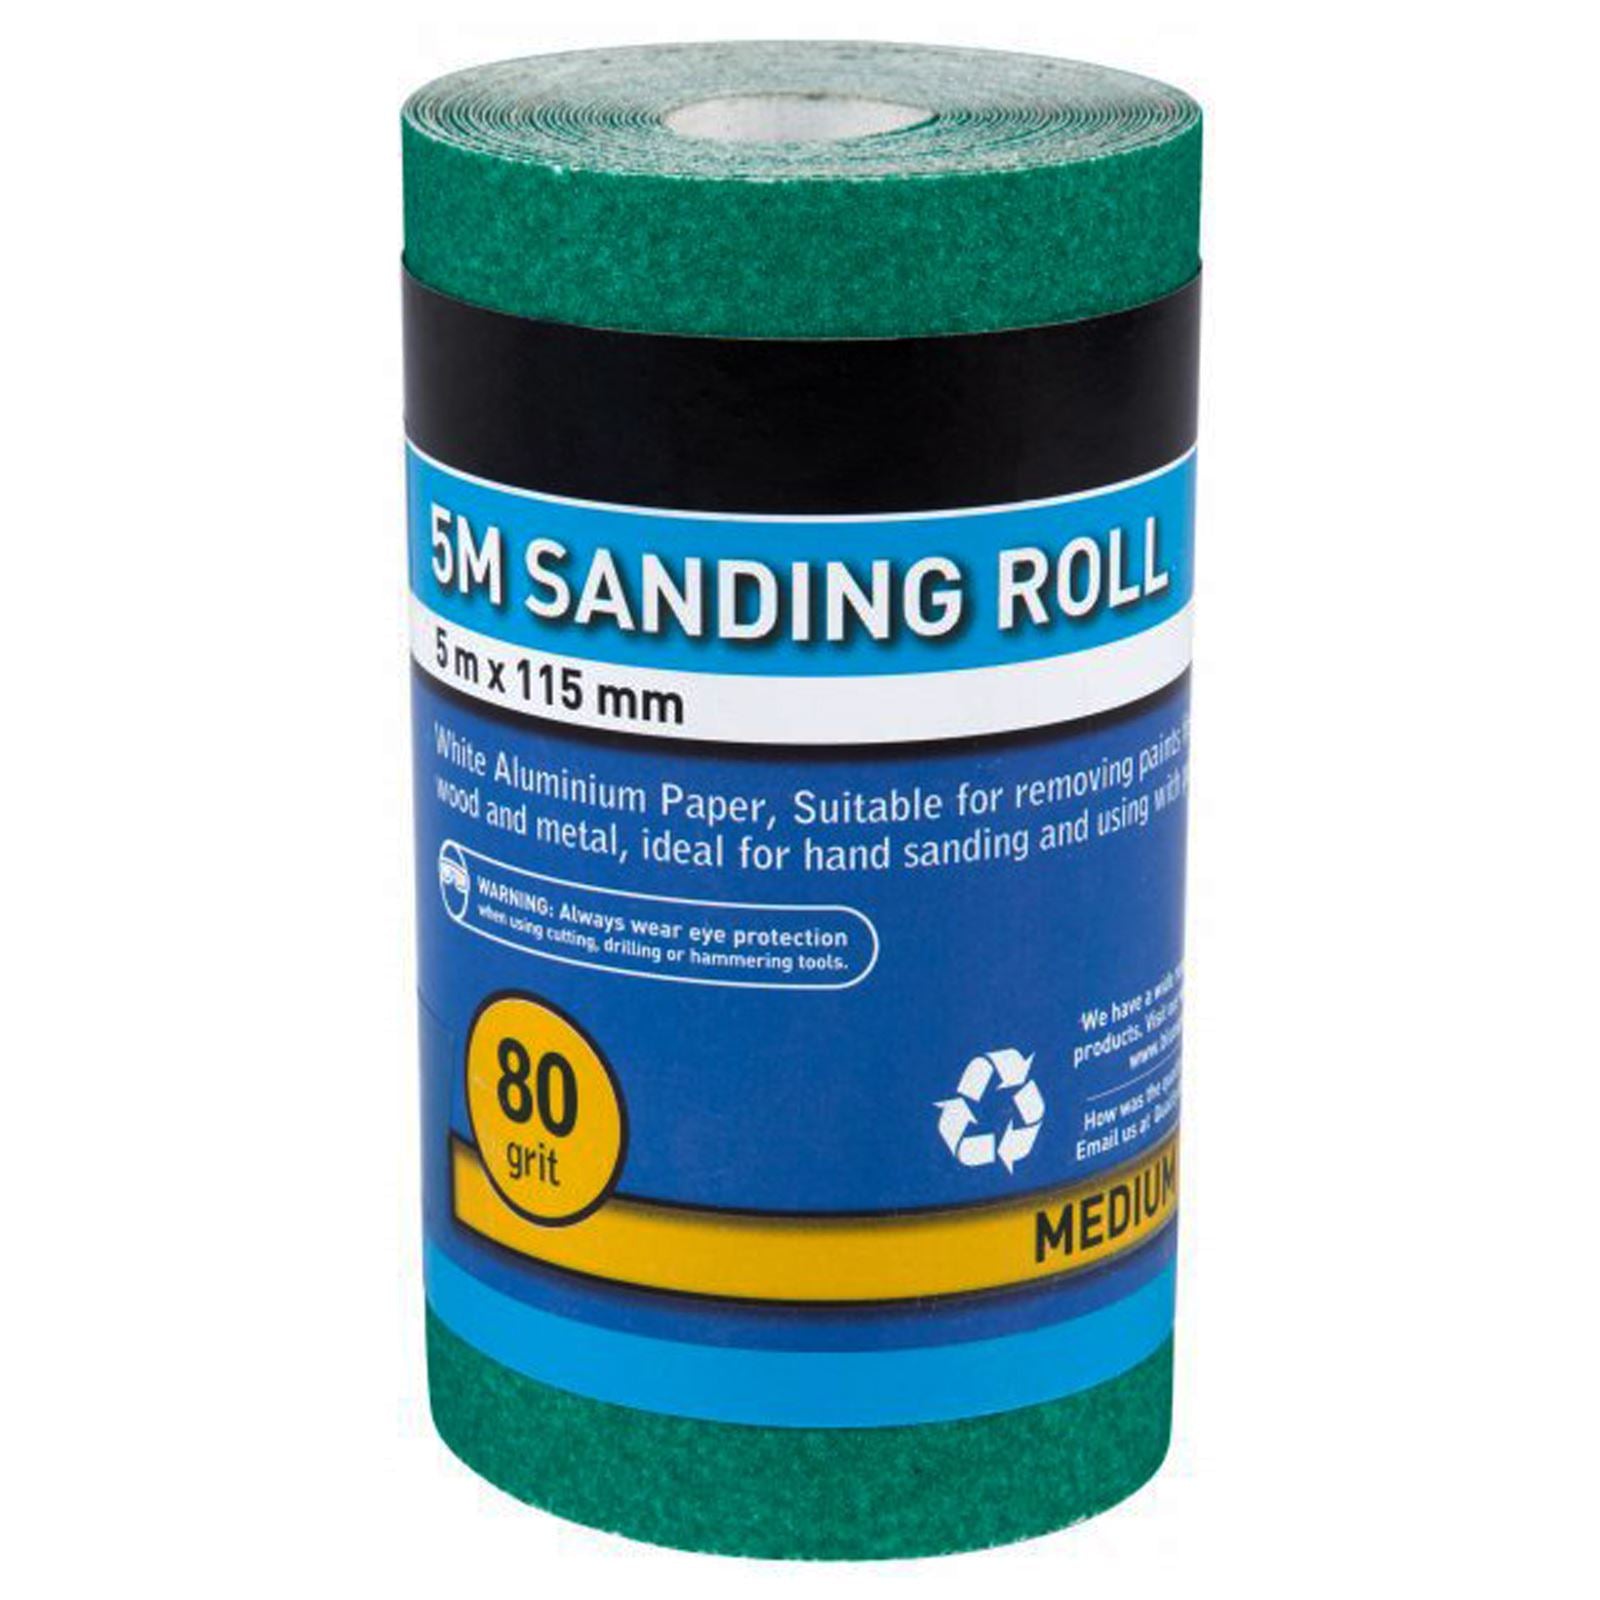 BlueSpot Sanding Paper Roll 5m x 115mm Aluminium Oxide